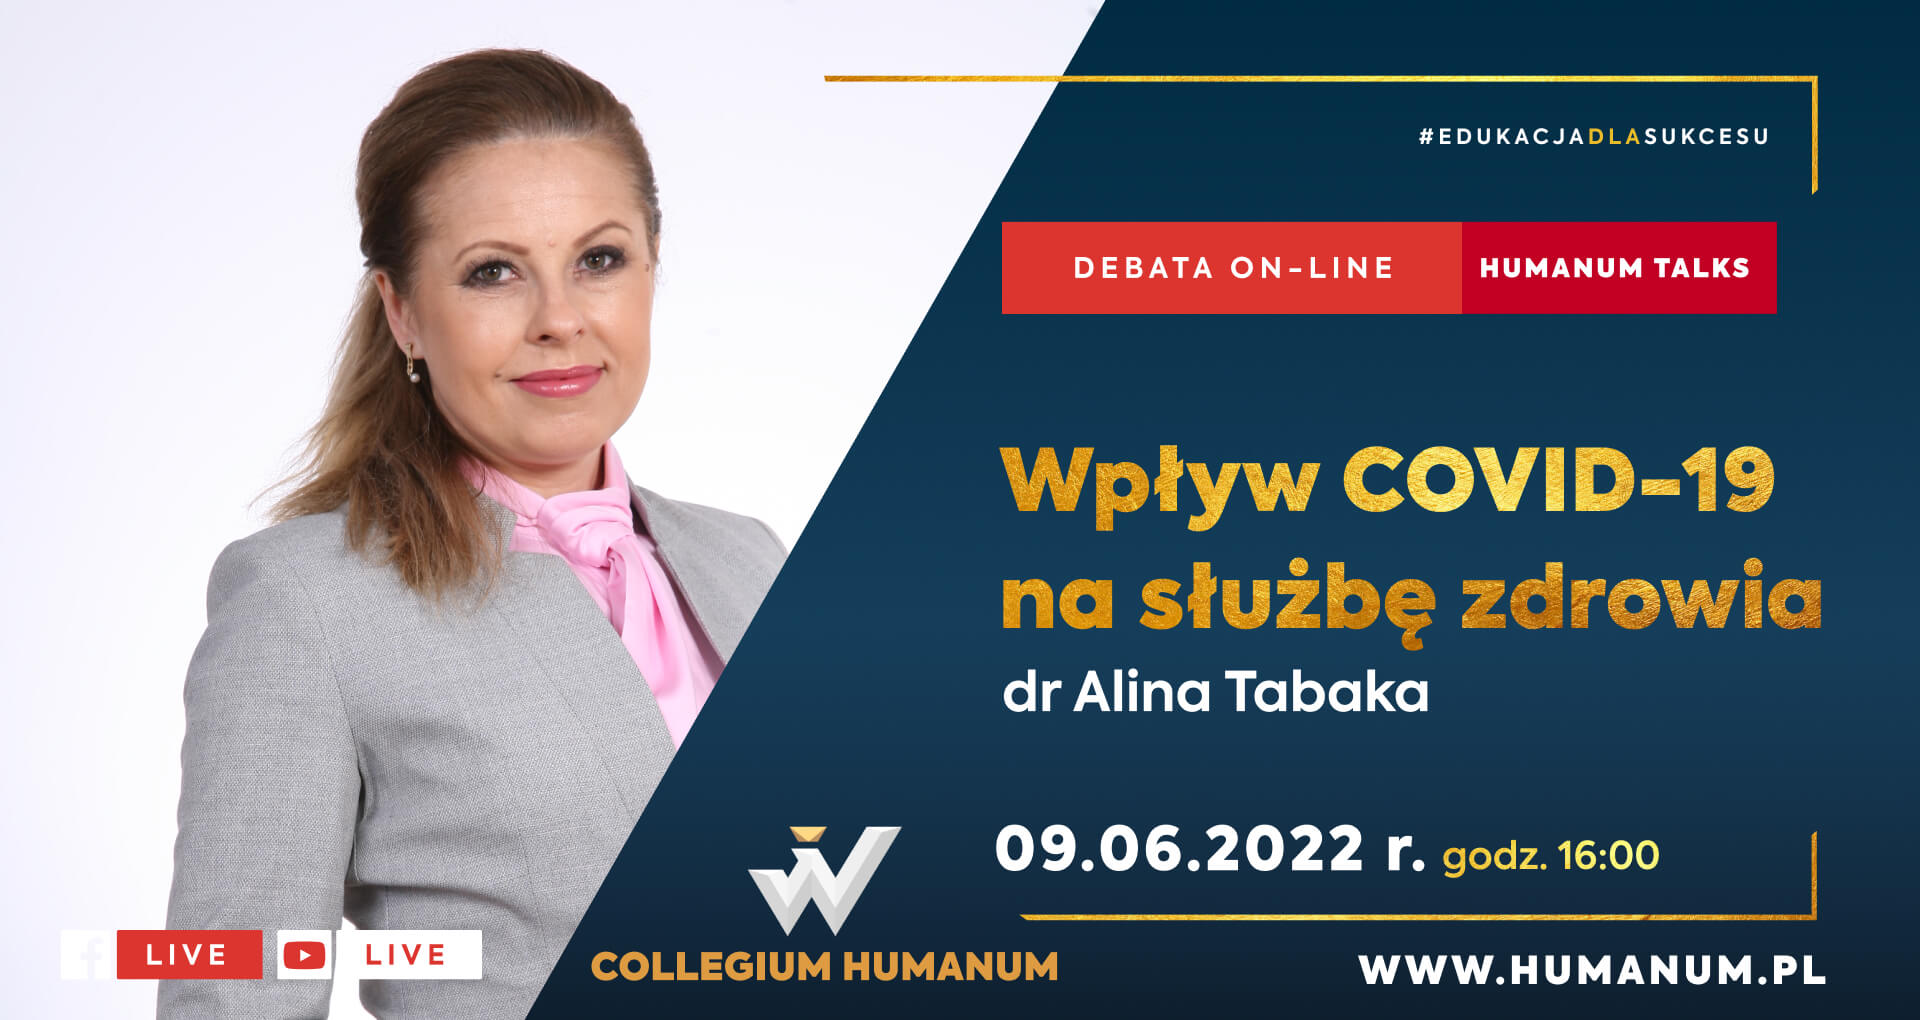 Debata online HUMANUM TALKS z dr Aliną Tabaką pt. "Wpływ COVID-19 na służbę zdrowia” 9.06.2022 r.